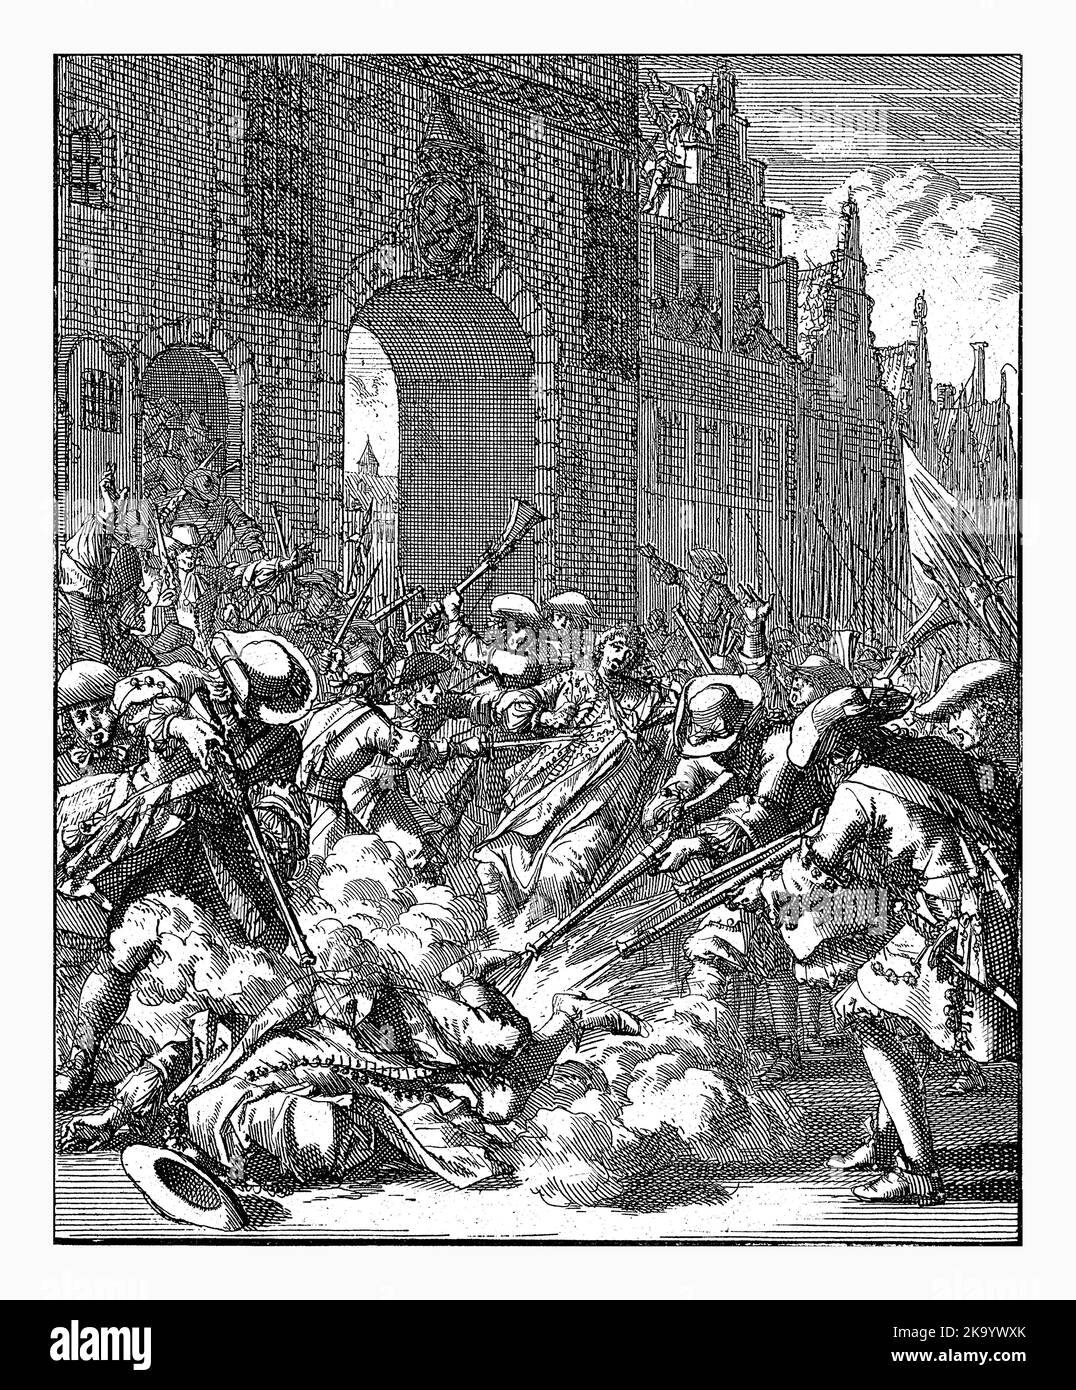 El asesinato de los hermanos De Witt, 1672, Jan Luyken, 1698 El asesinato de Johan y Cornelis de Witt, 20 de agosto de 1672. Los hermanos son asesinados por un ang Foto de stock